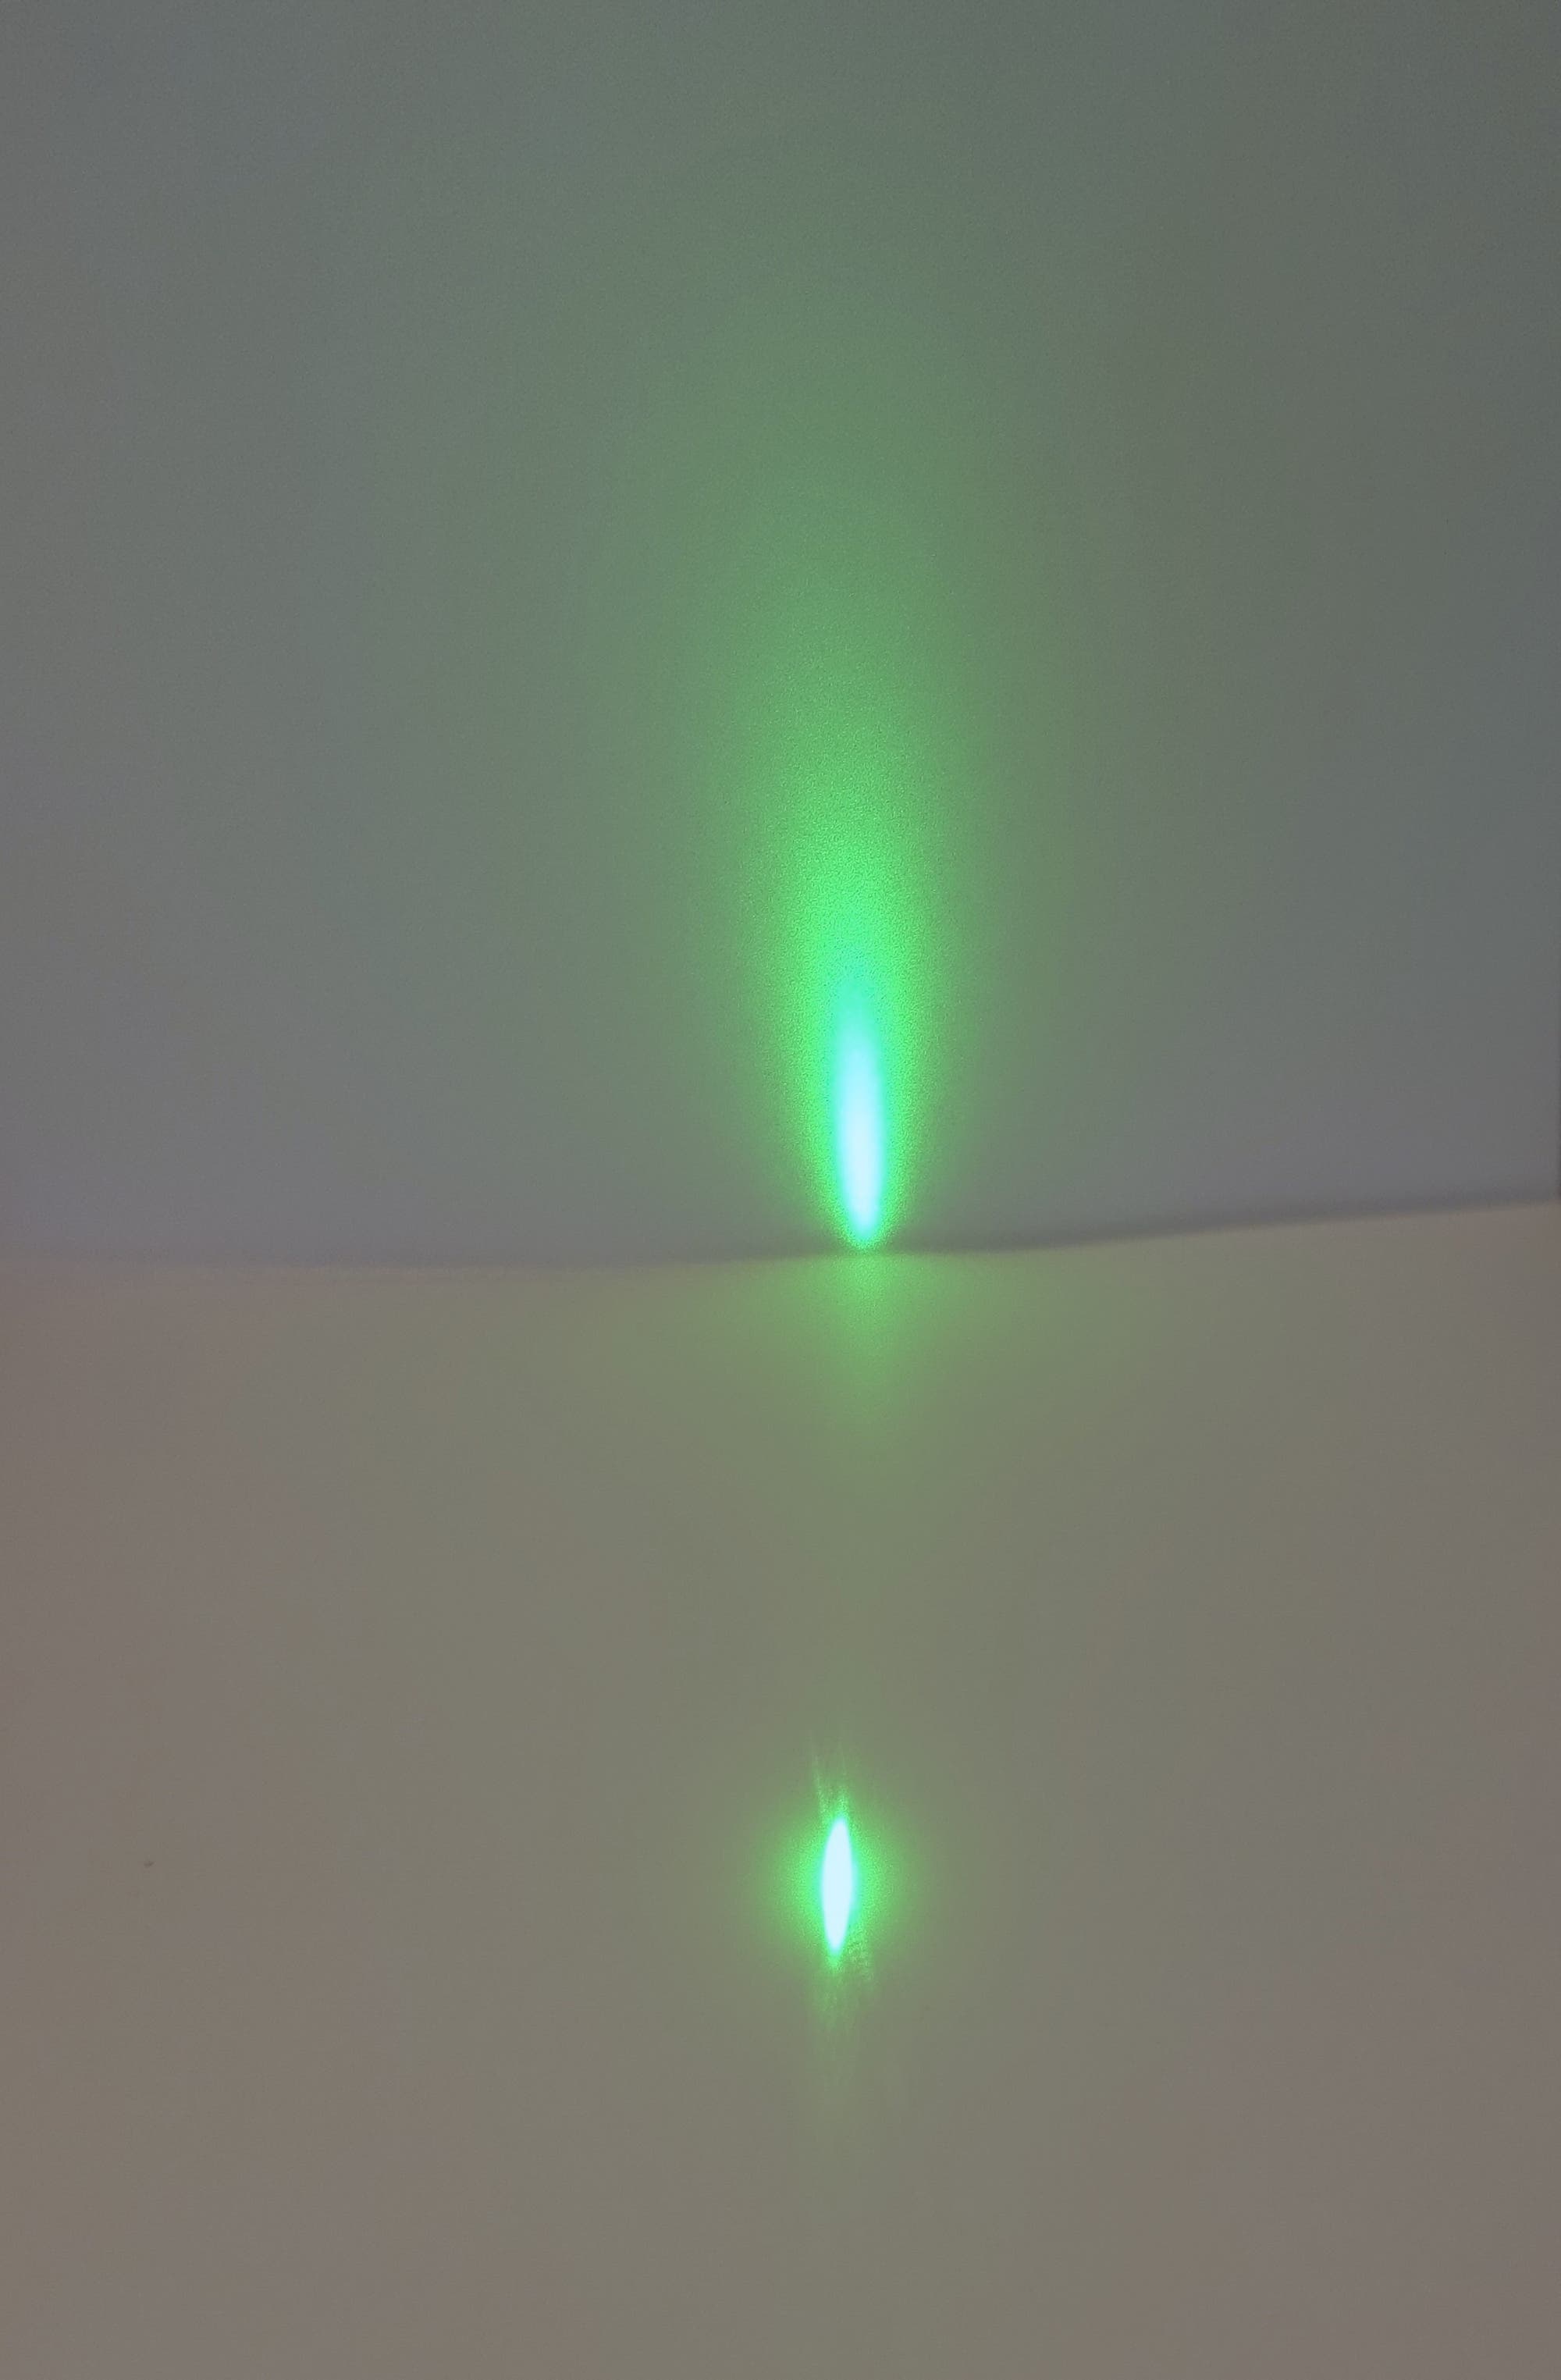 Der Strahl eines Laserpointers wird beim schrägen Einfall auf einem Blatt Papier von diesem an einen Schirm reflektiert